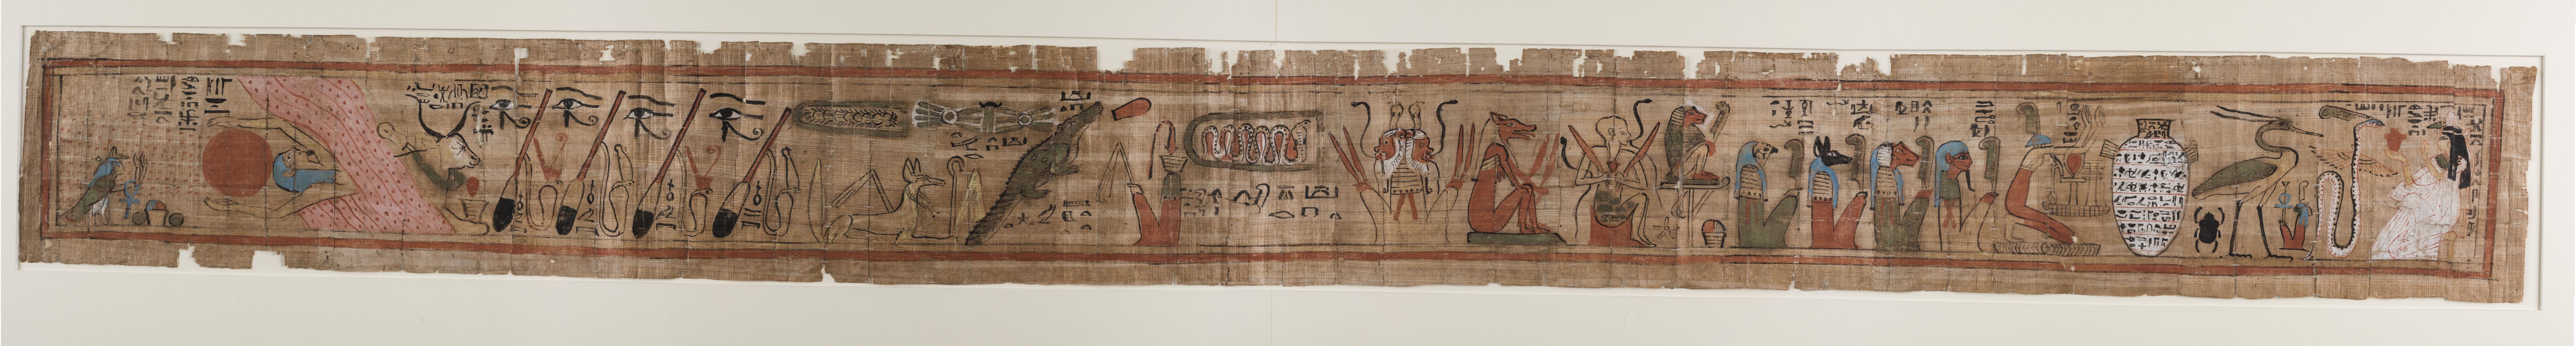 都灵埃及博物馆-藏品(4)：纸莎草画《死者之书》【高清大图欣赏】 - 知乎